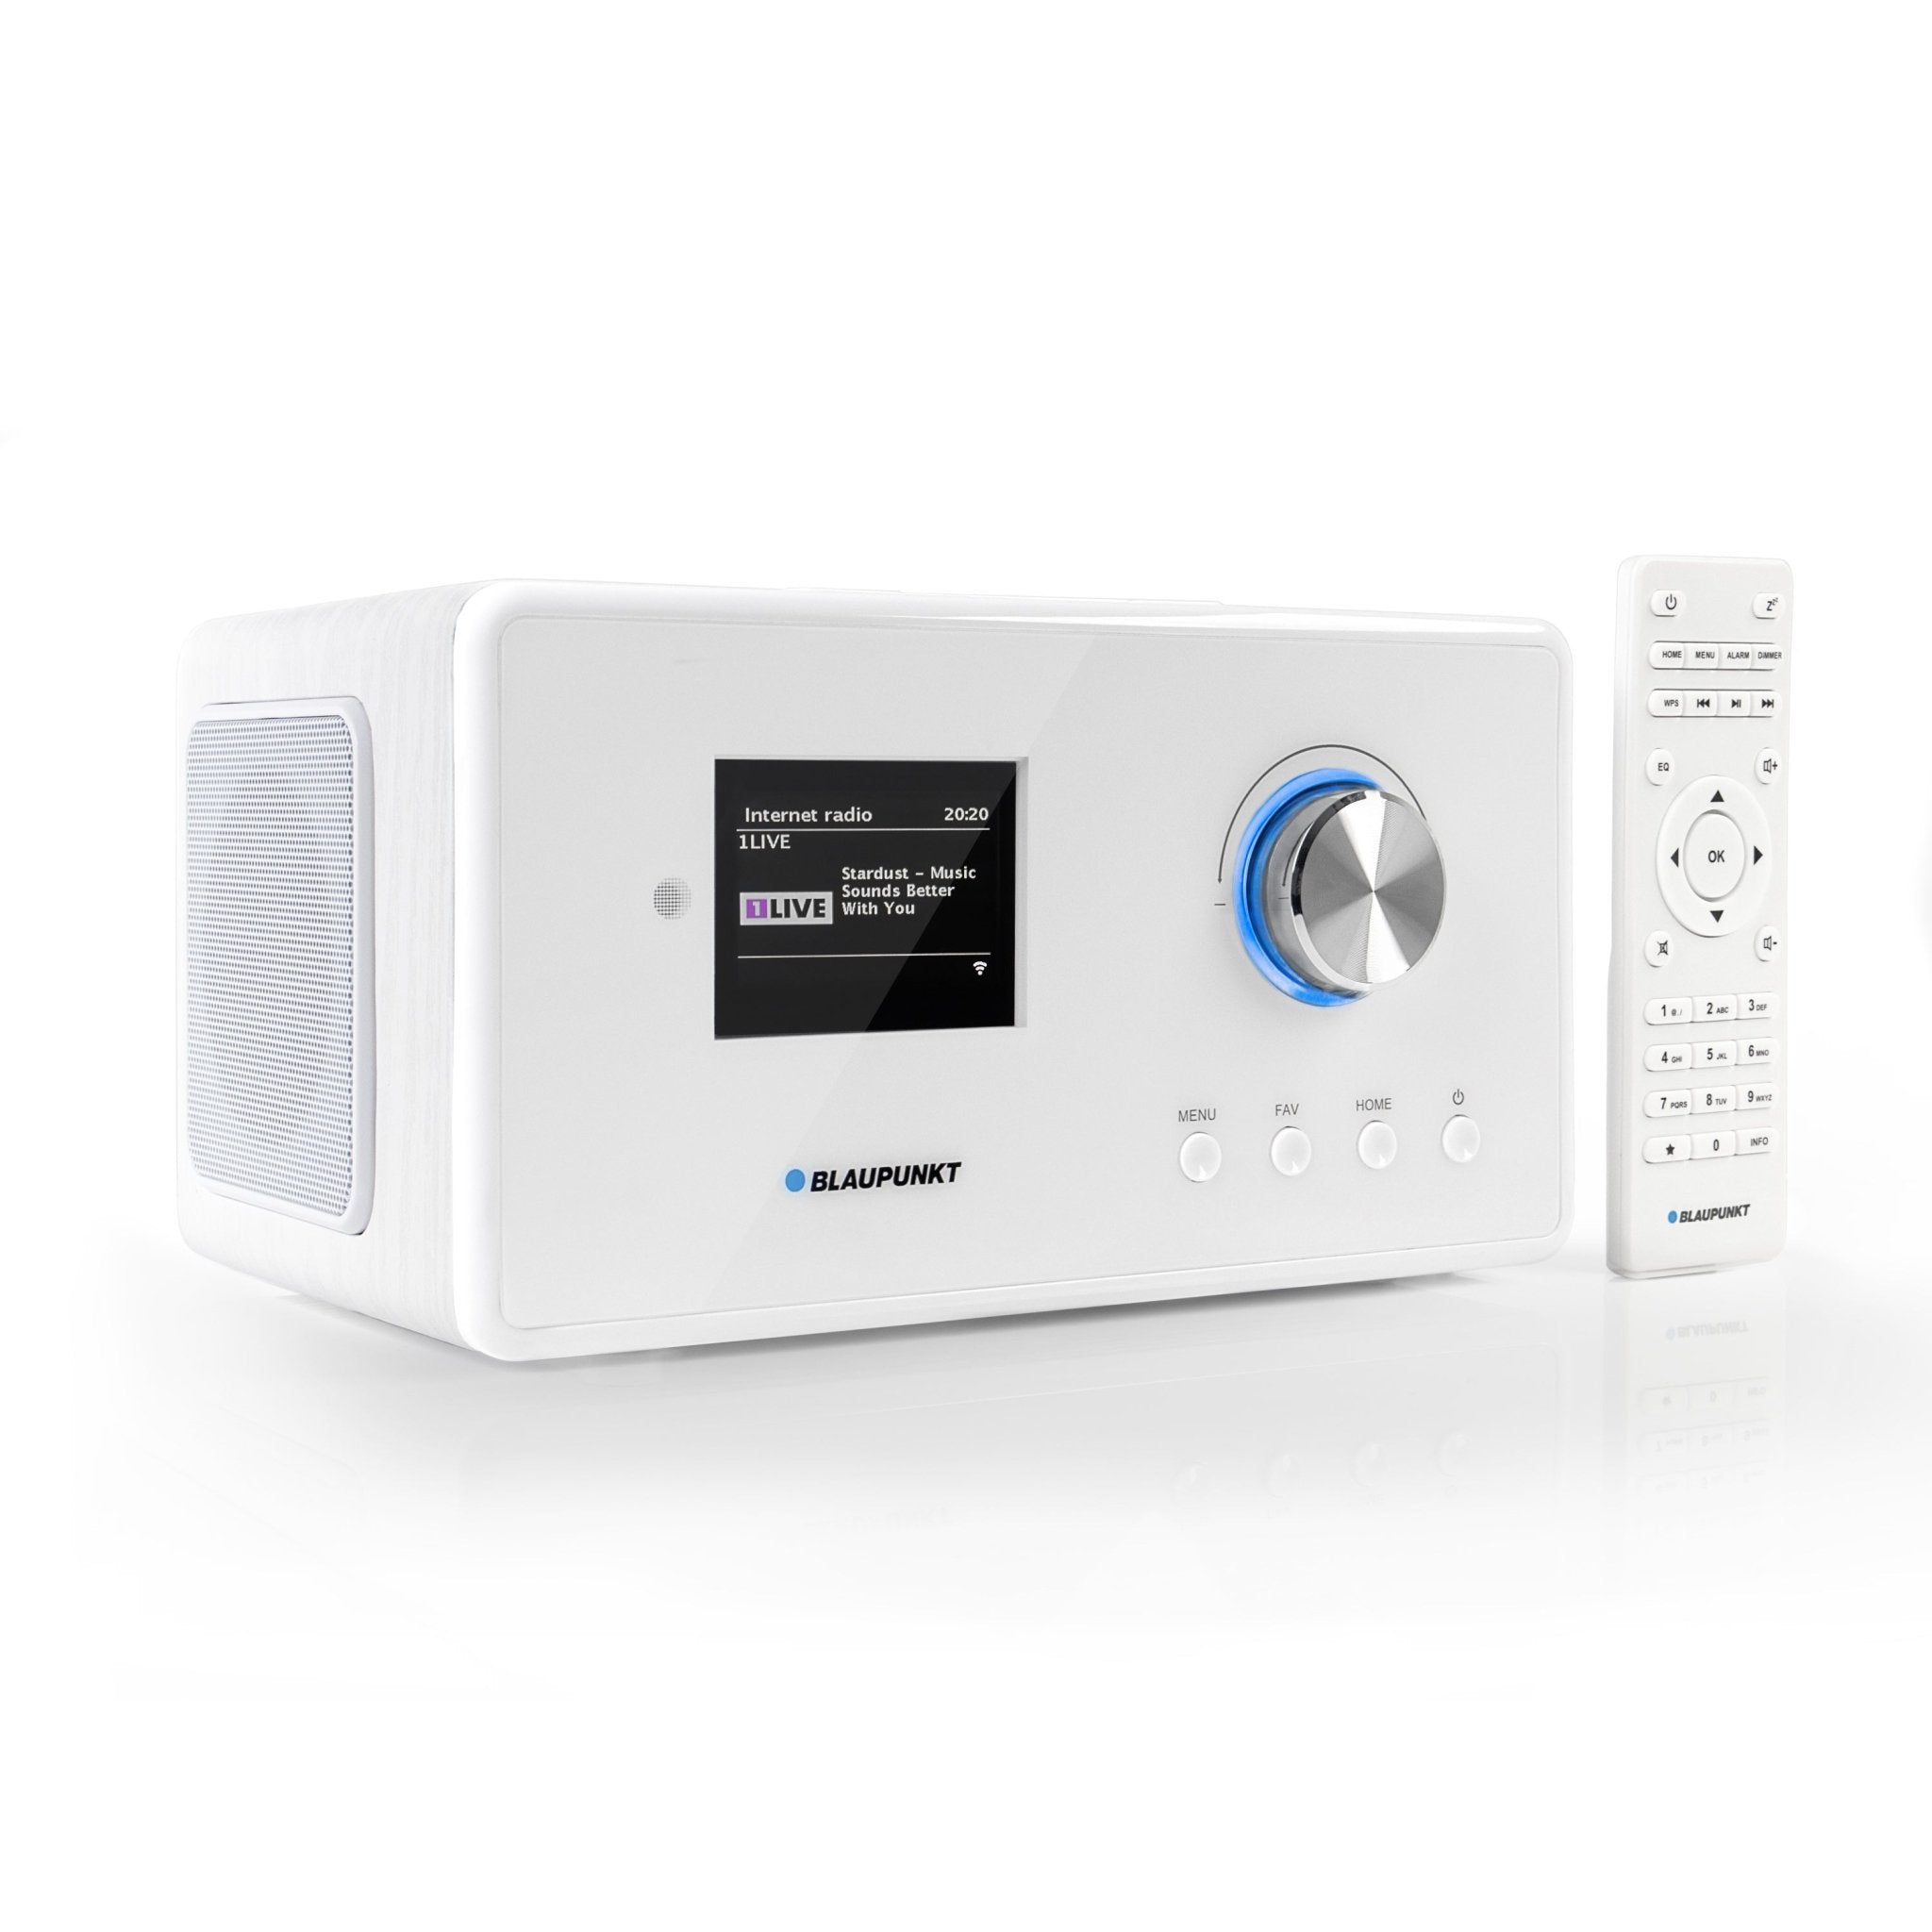 Internetradio mit Bluetooth | IRD 300